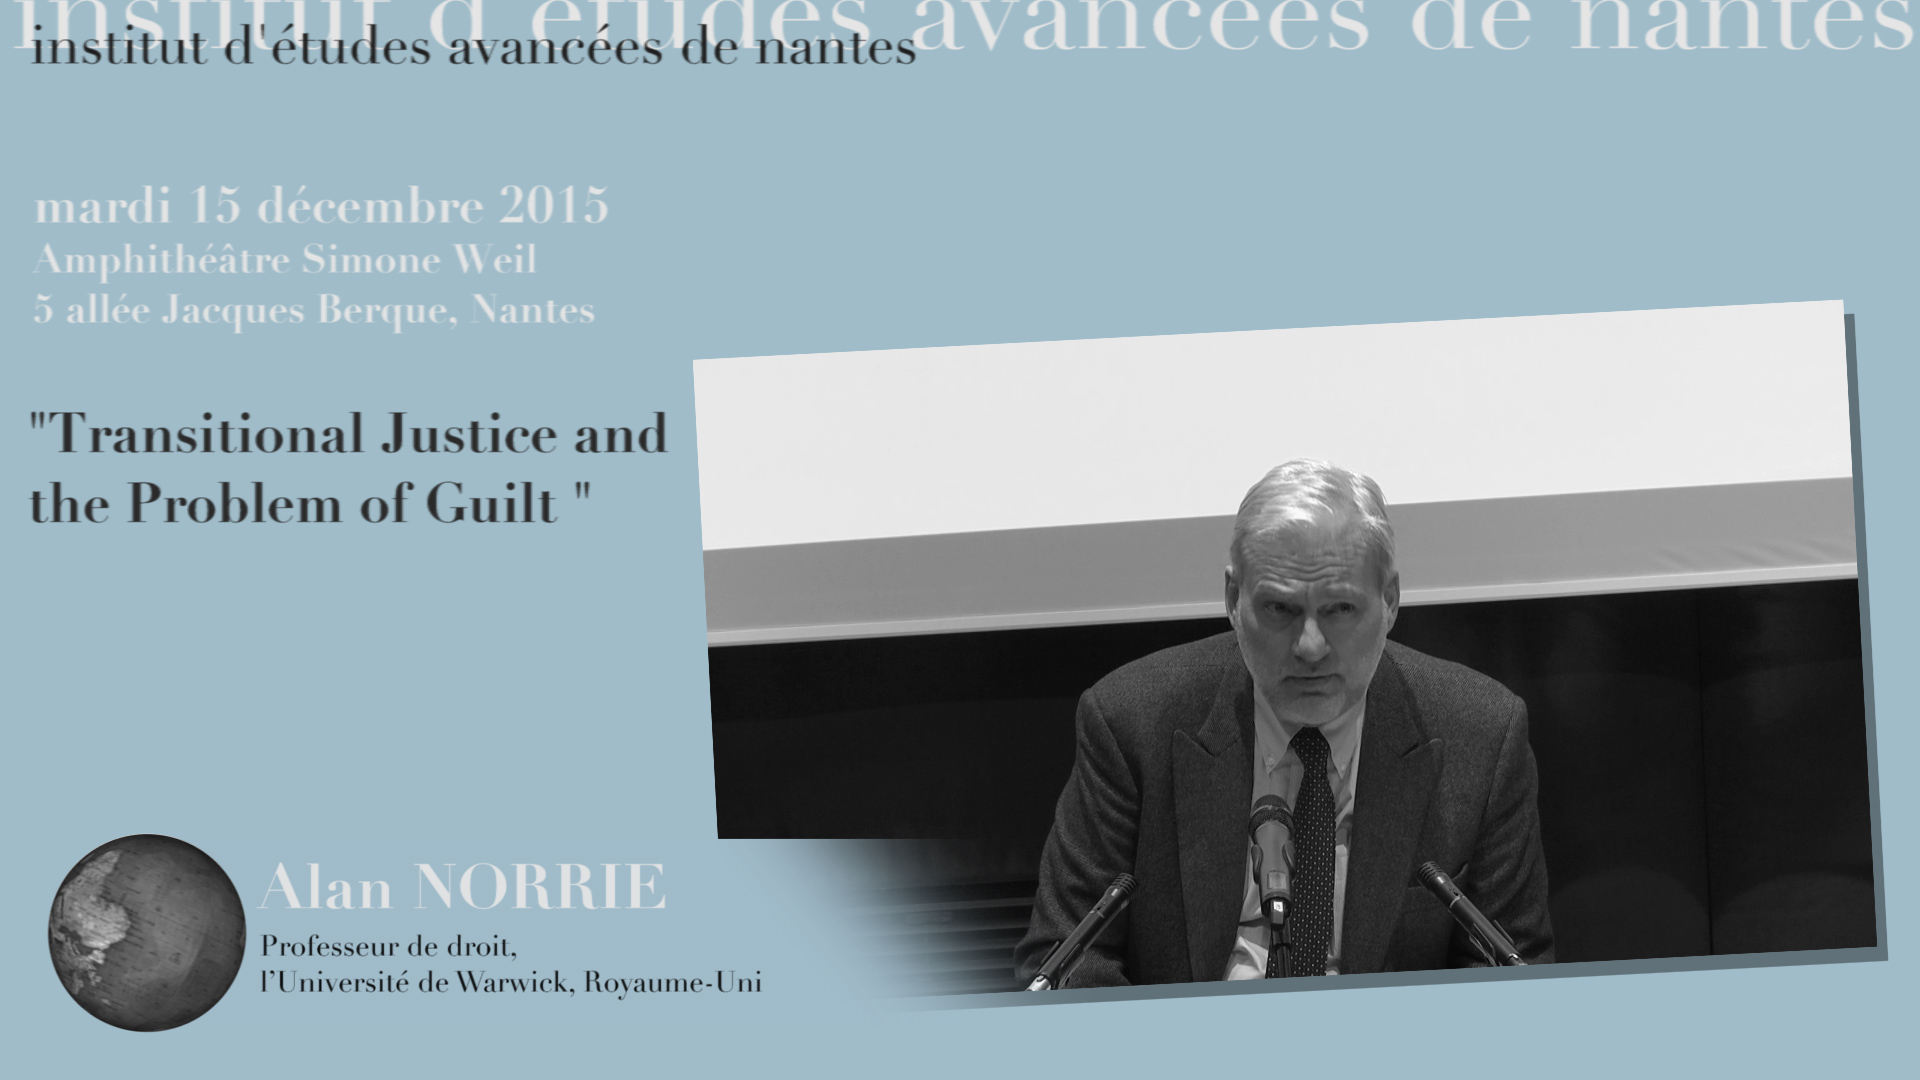 Alan Norrie : "Justice transitionnelle et le problème de la culpabilité dans le droit"